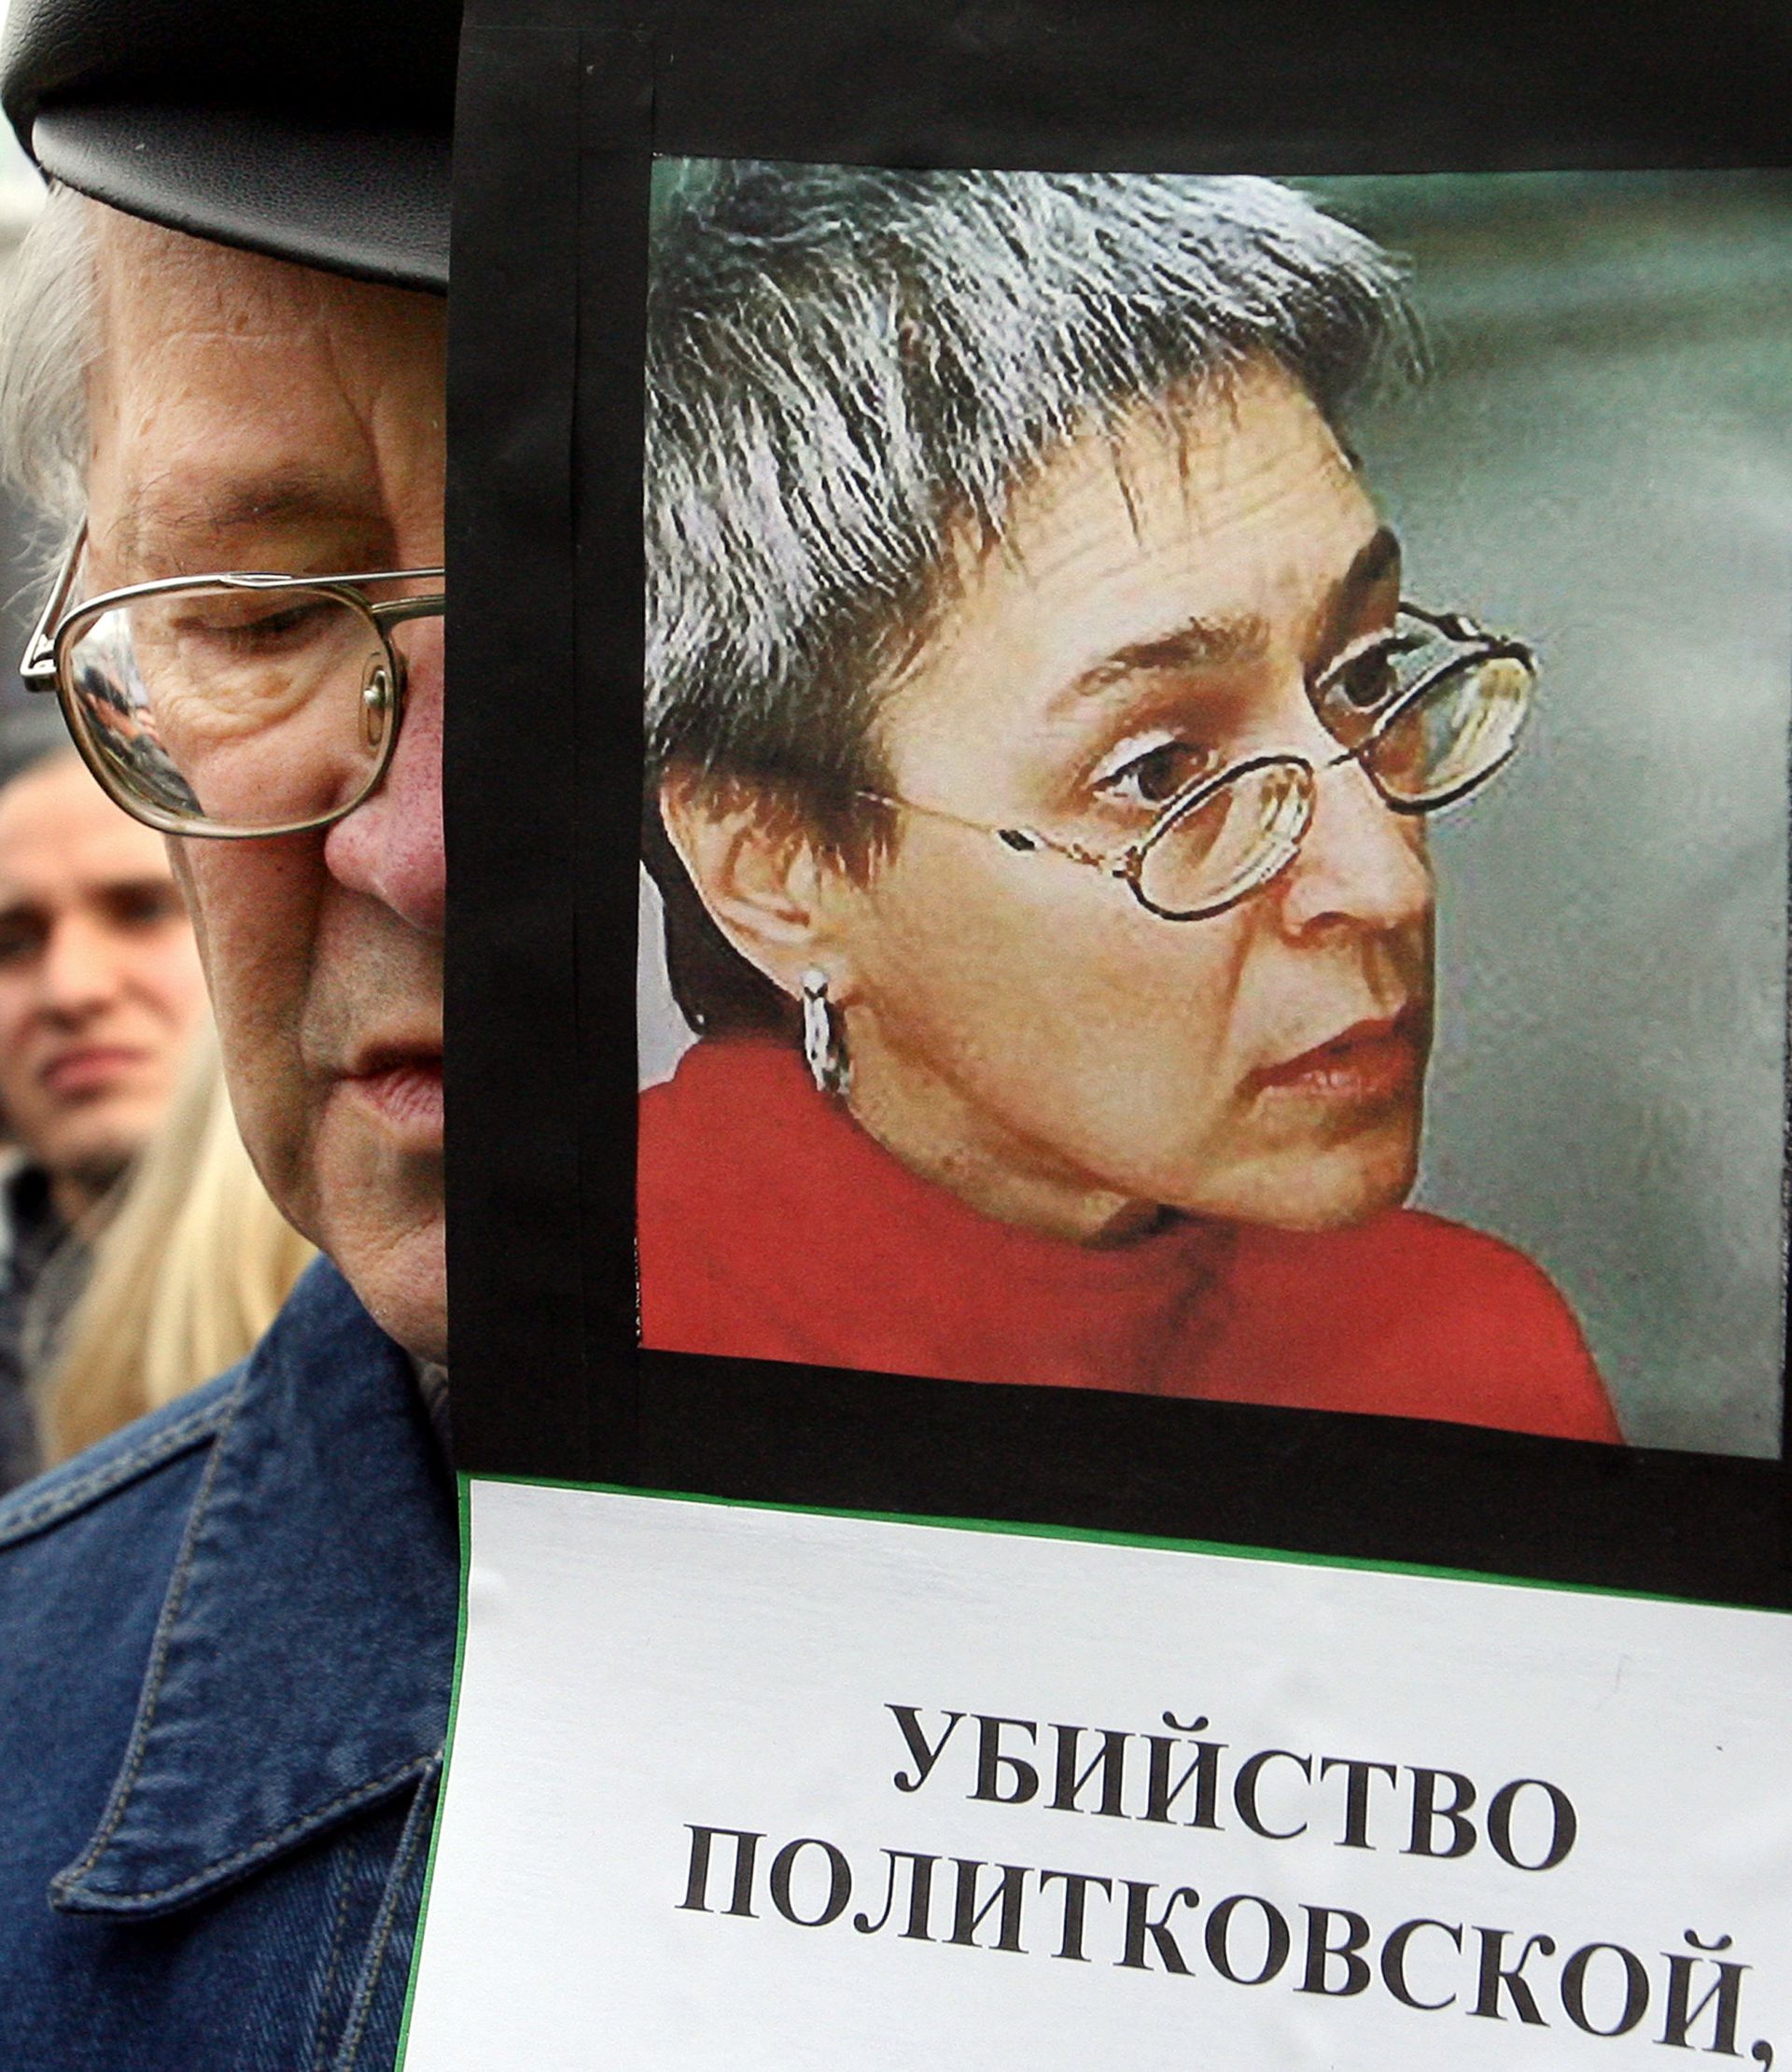 Политковская и Немцов